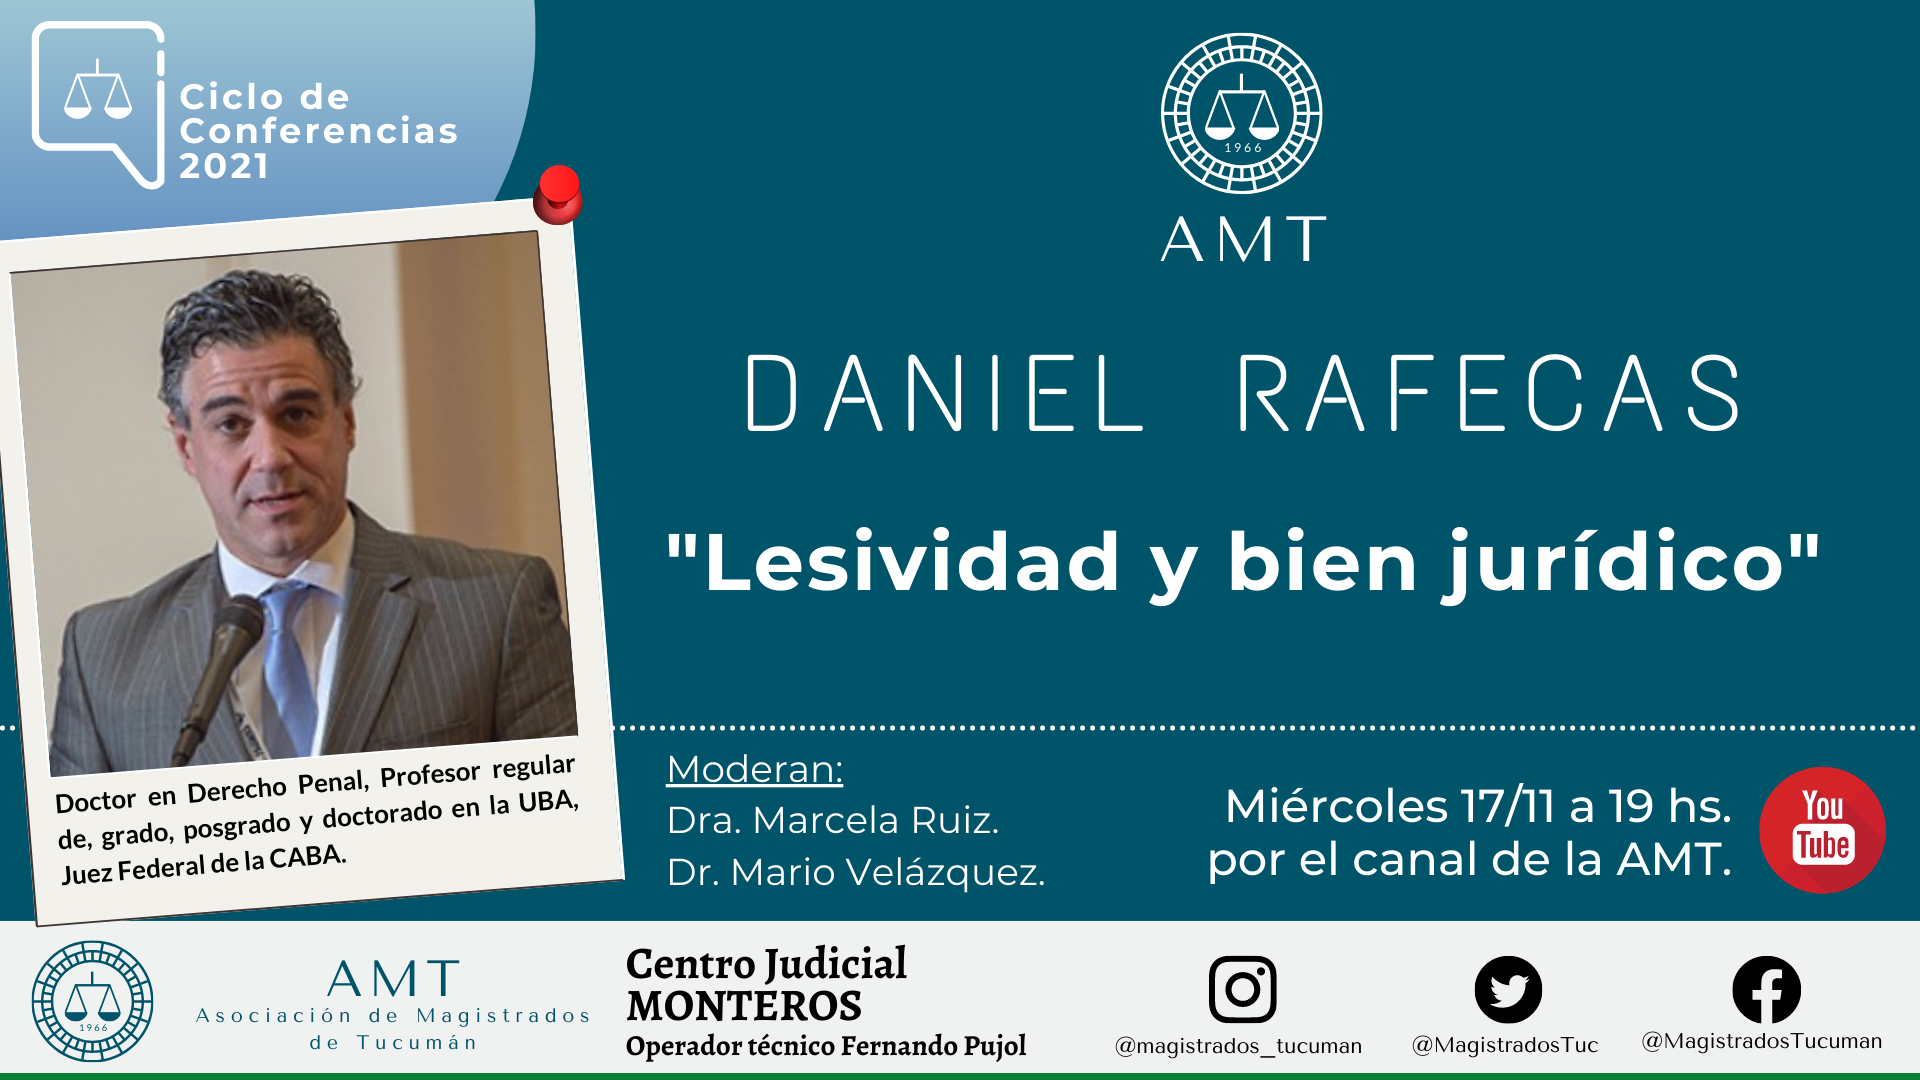 Vuelva a ver la conferencia de Daniel Rafecas «Lesividad y bien jurídico»